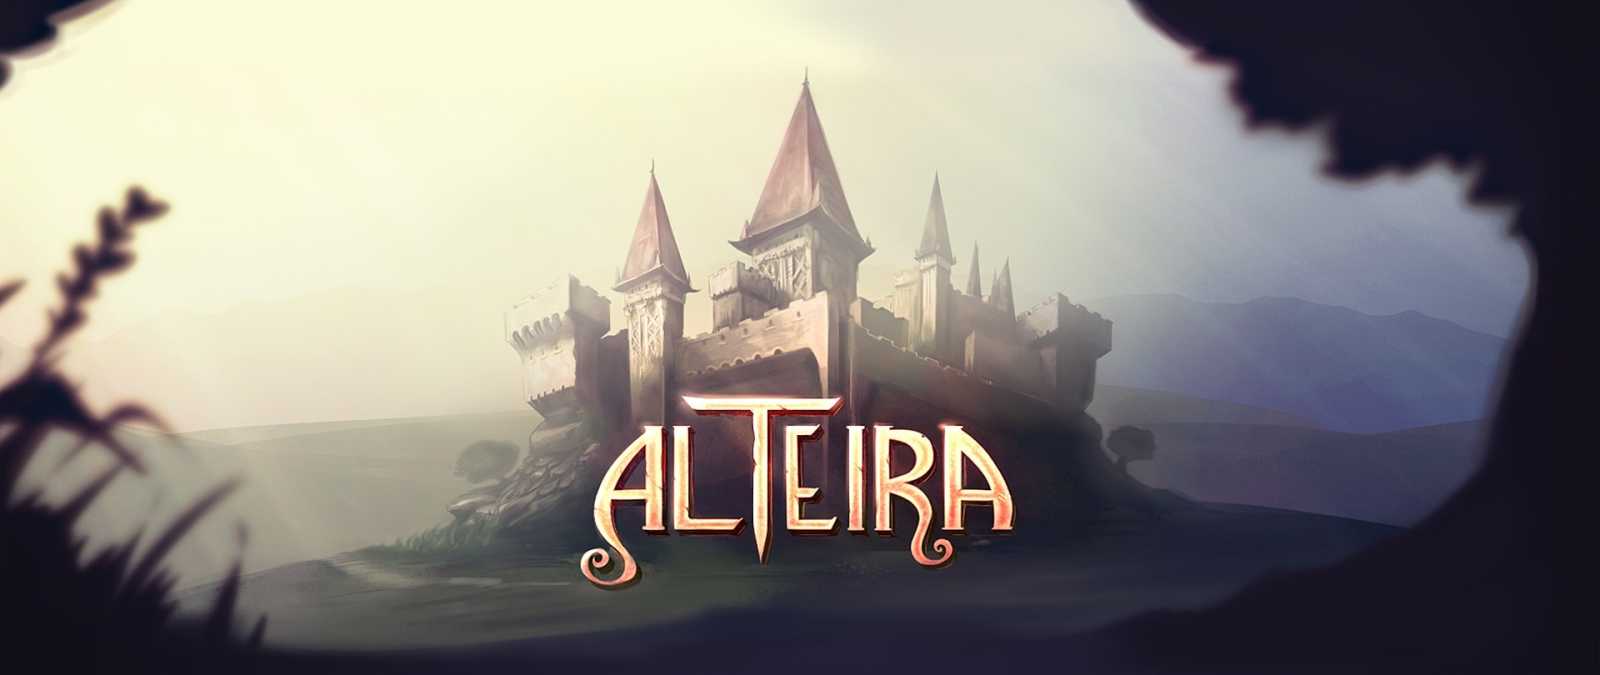 Vychází české RPG Alteira, zahrajete si ho i v prohlížeči a úplně zdarma